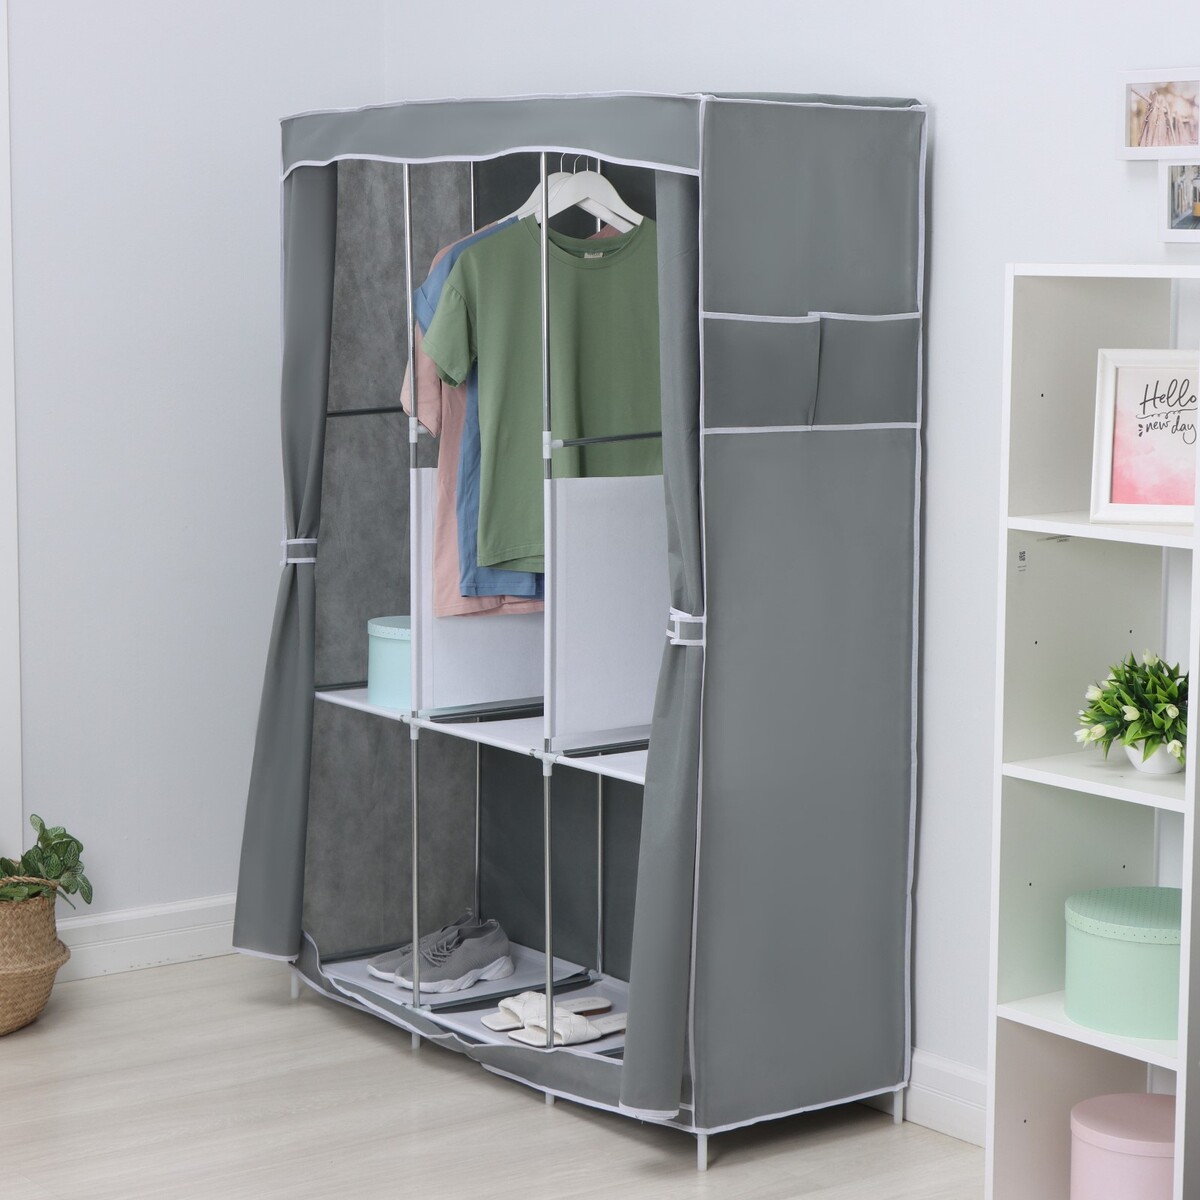 Шкаф тканевый каркасный, складной ladо́m, 125×45×168 см, цвет серый шкаф тканевый каркасный складной ladо́m 125×45×168 см серый